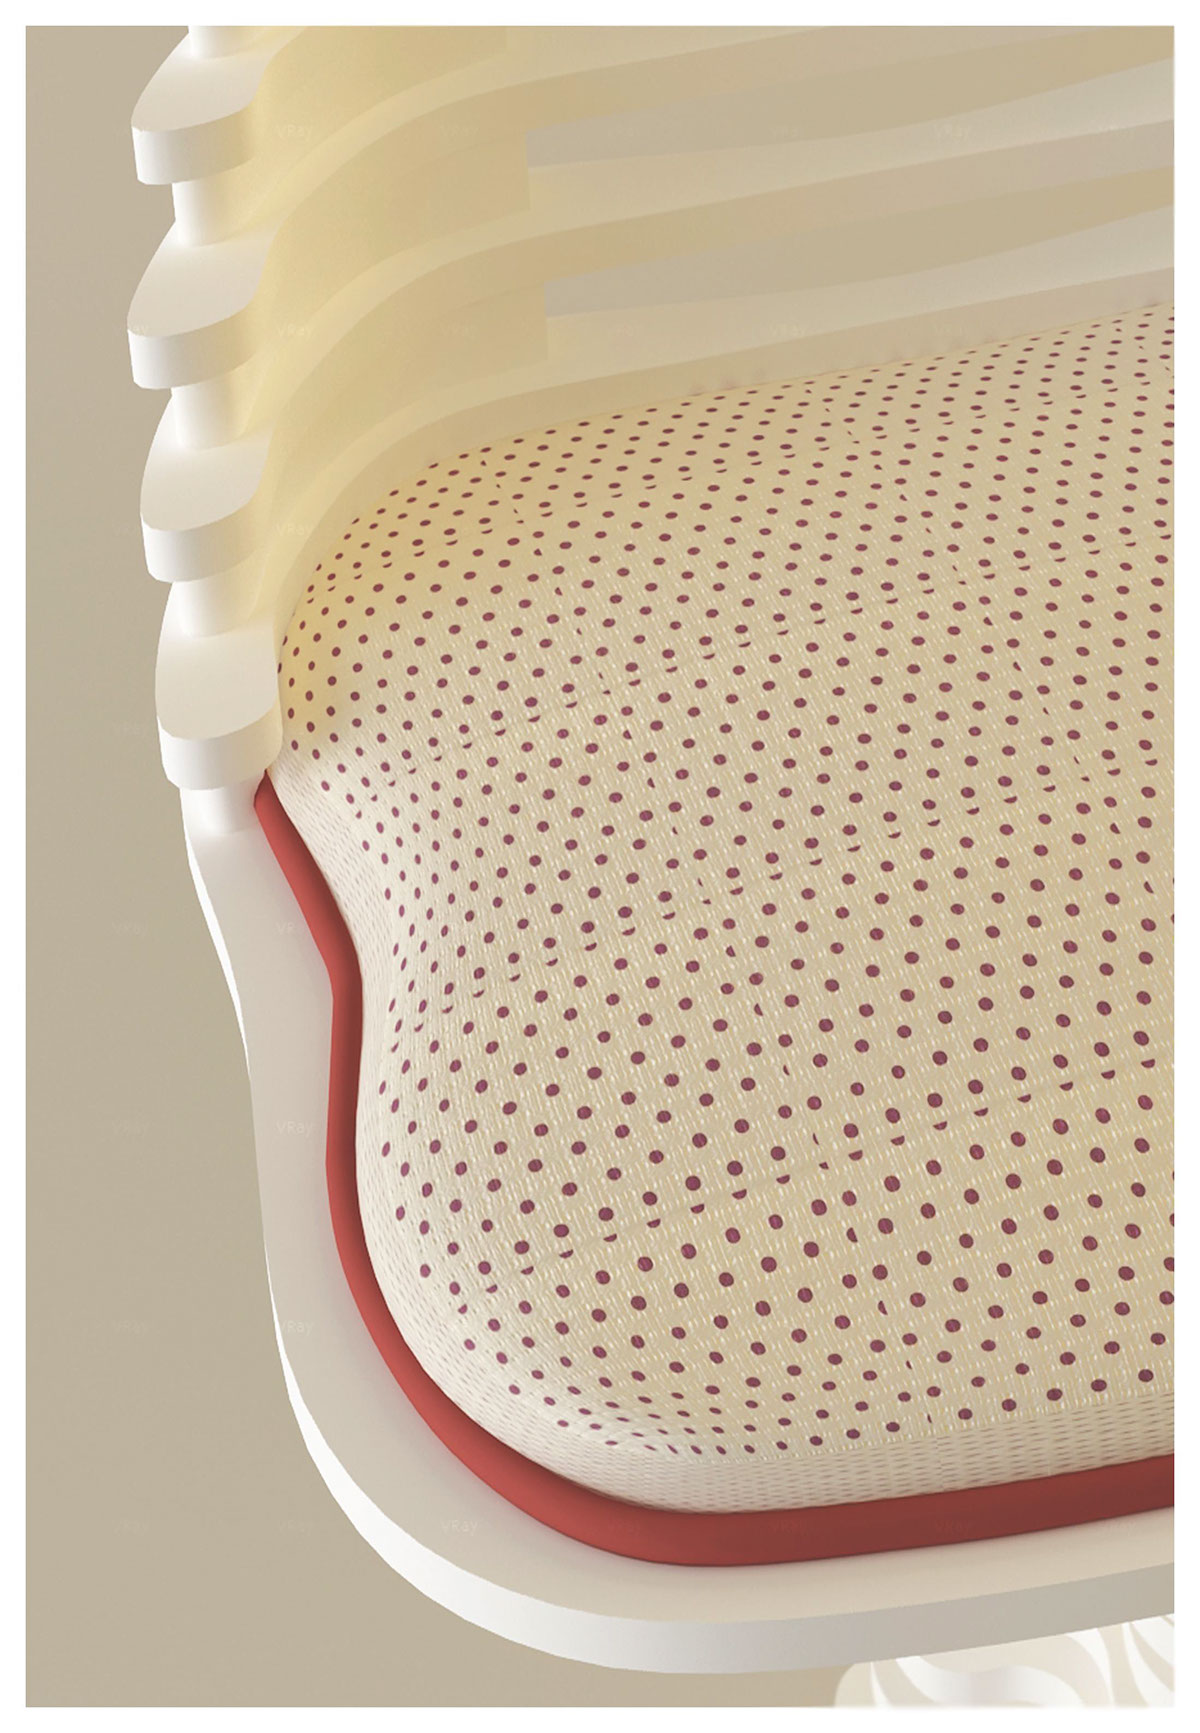 spine gravity chair andrei otet modern chiar acrilyc chair float Segments design andrei otet